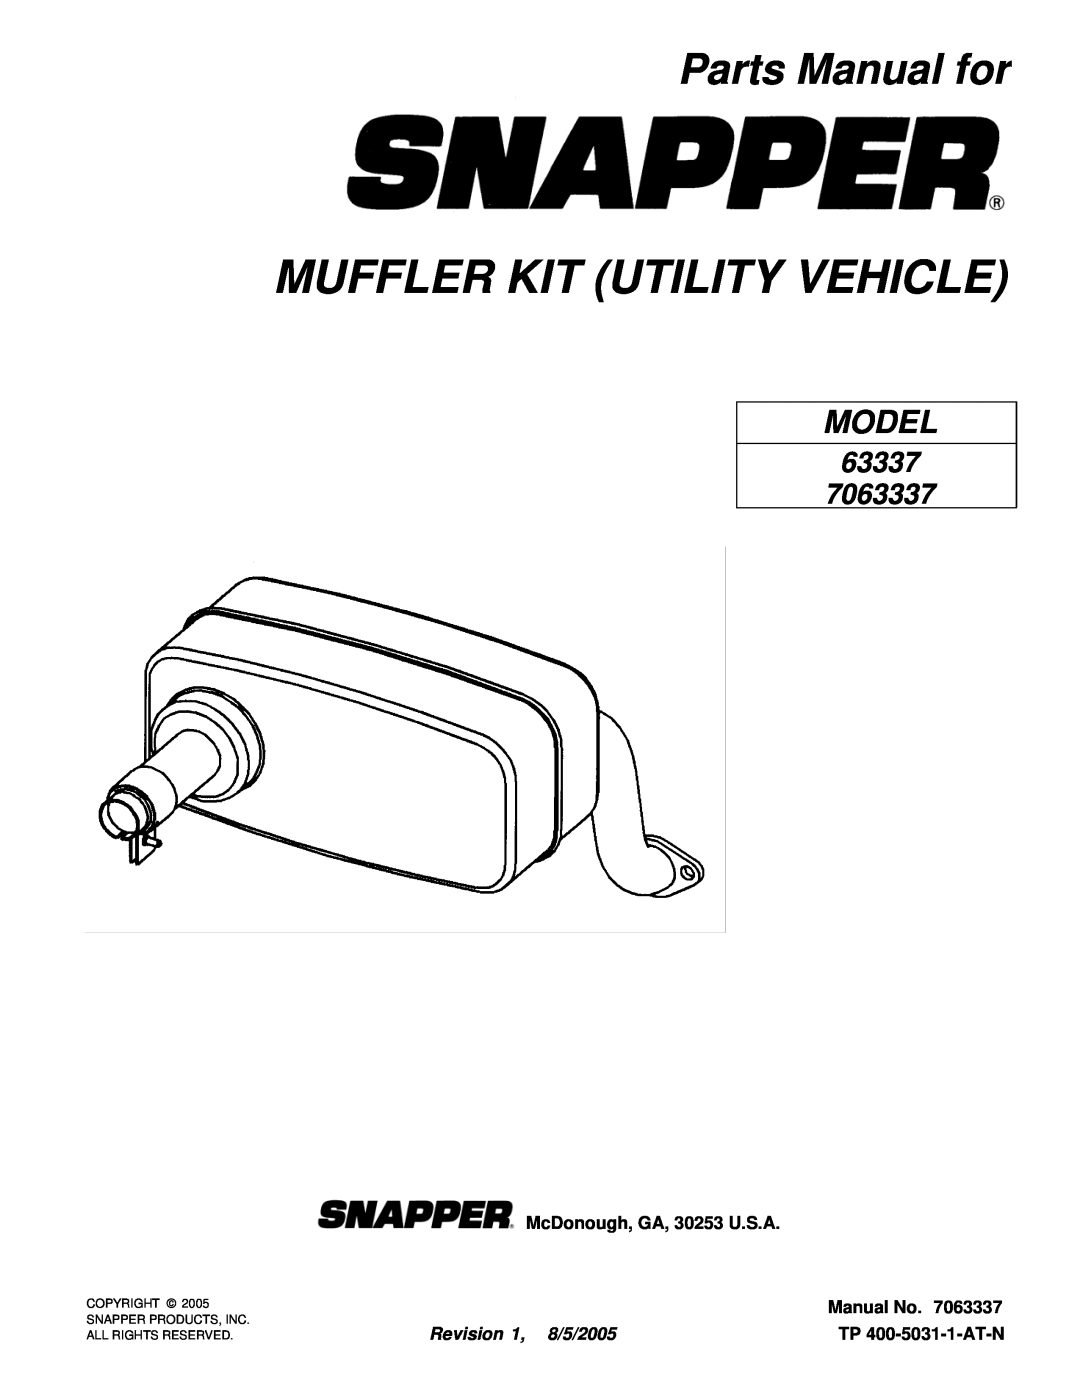 Snapper 63337 manual Parts Manual for, McDonough, GA, 30253 U.S.A, Manual No, Revision 1, 8/5/2005, TP 400-5031-1-AT-N 